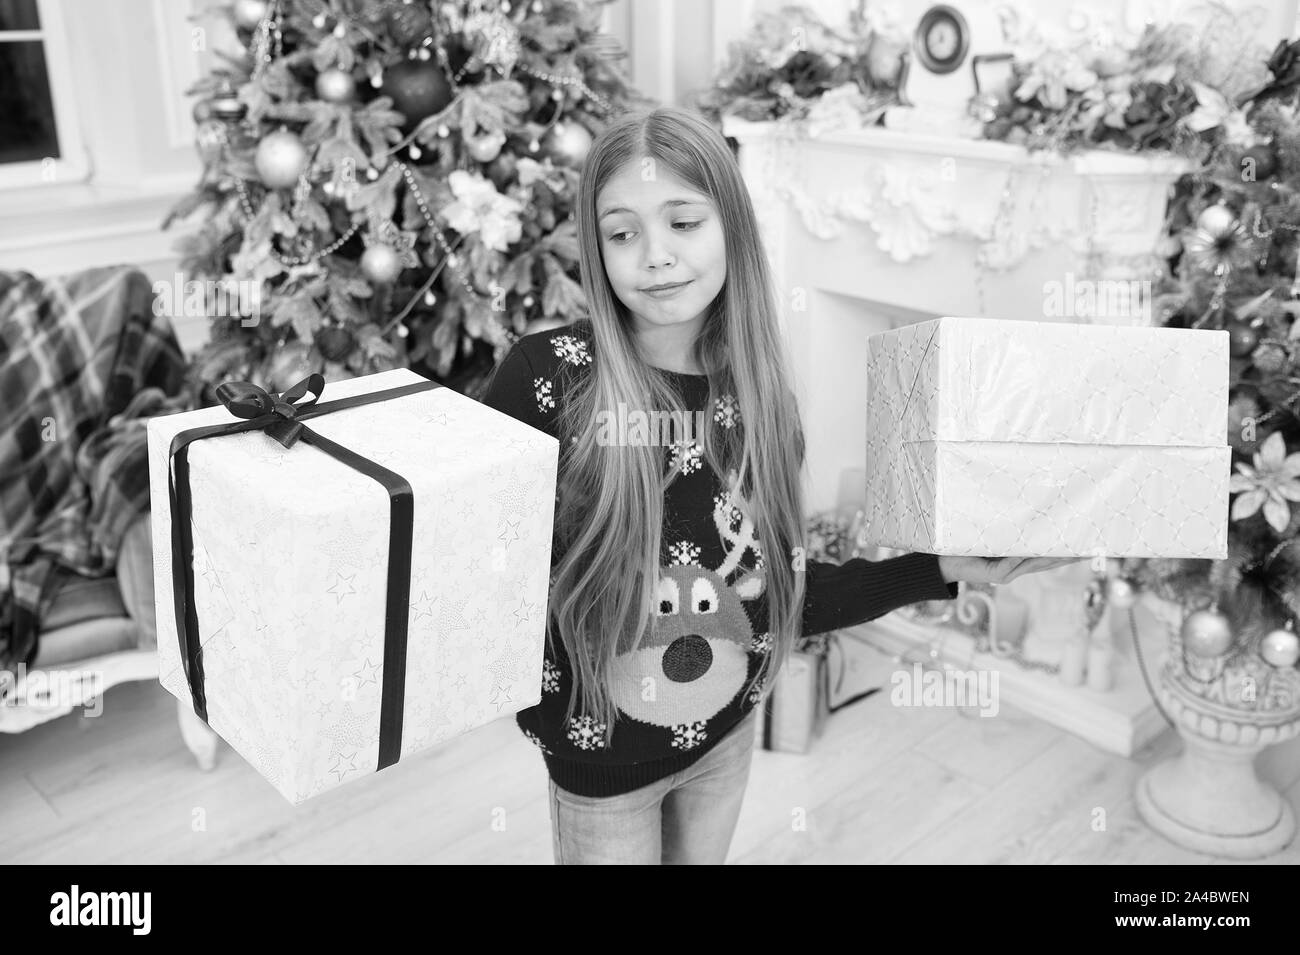 Deseándote una muy feliz navidad Imágenes de stock en blanco y negro - Alamy